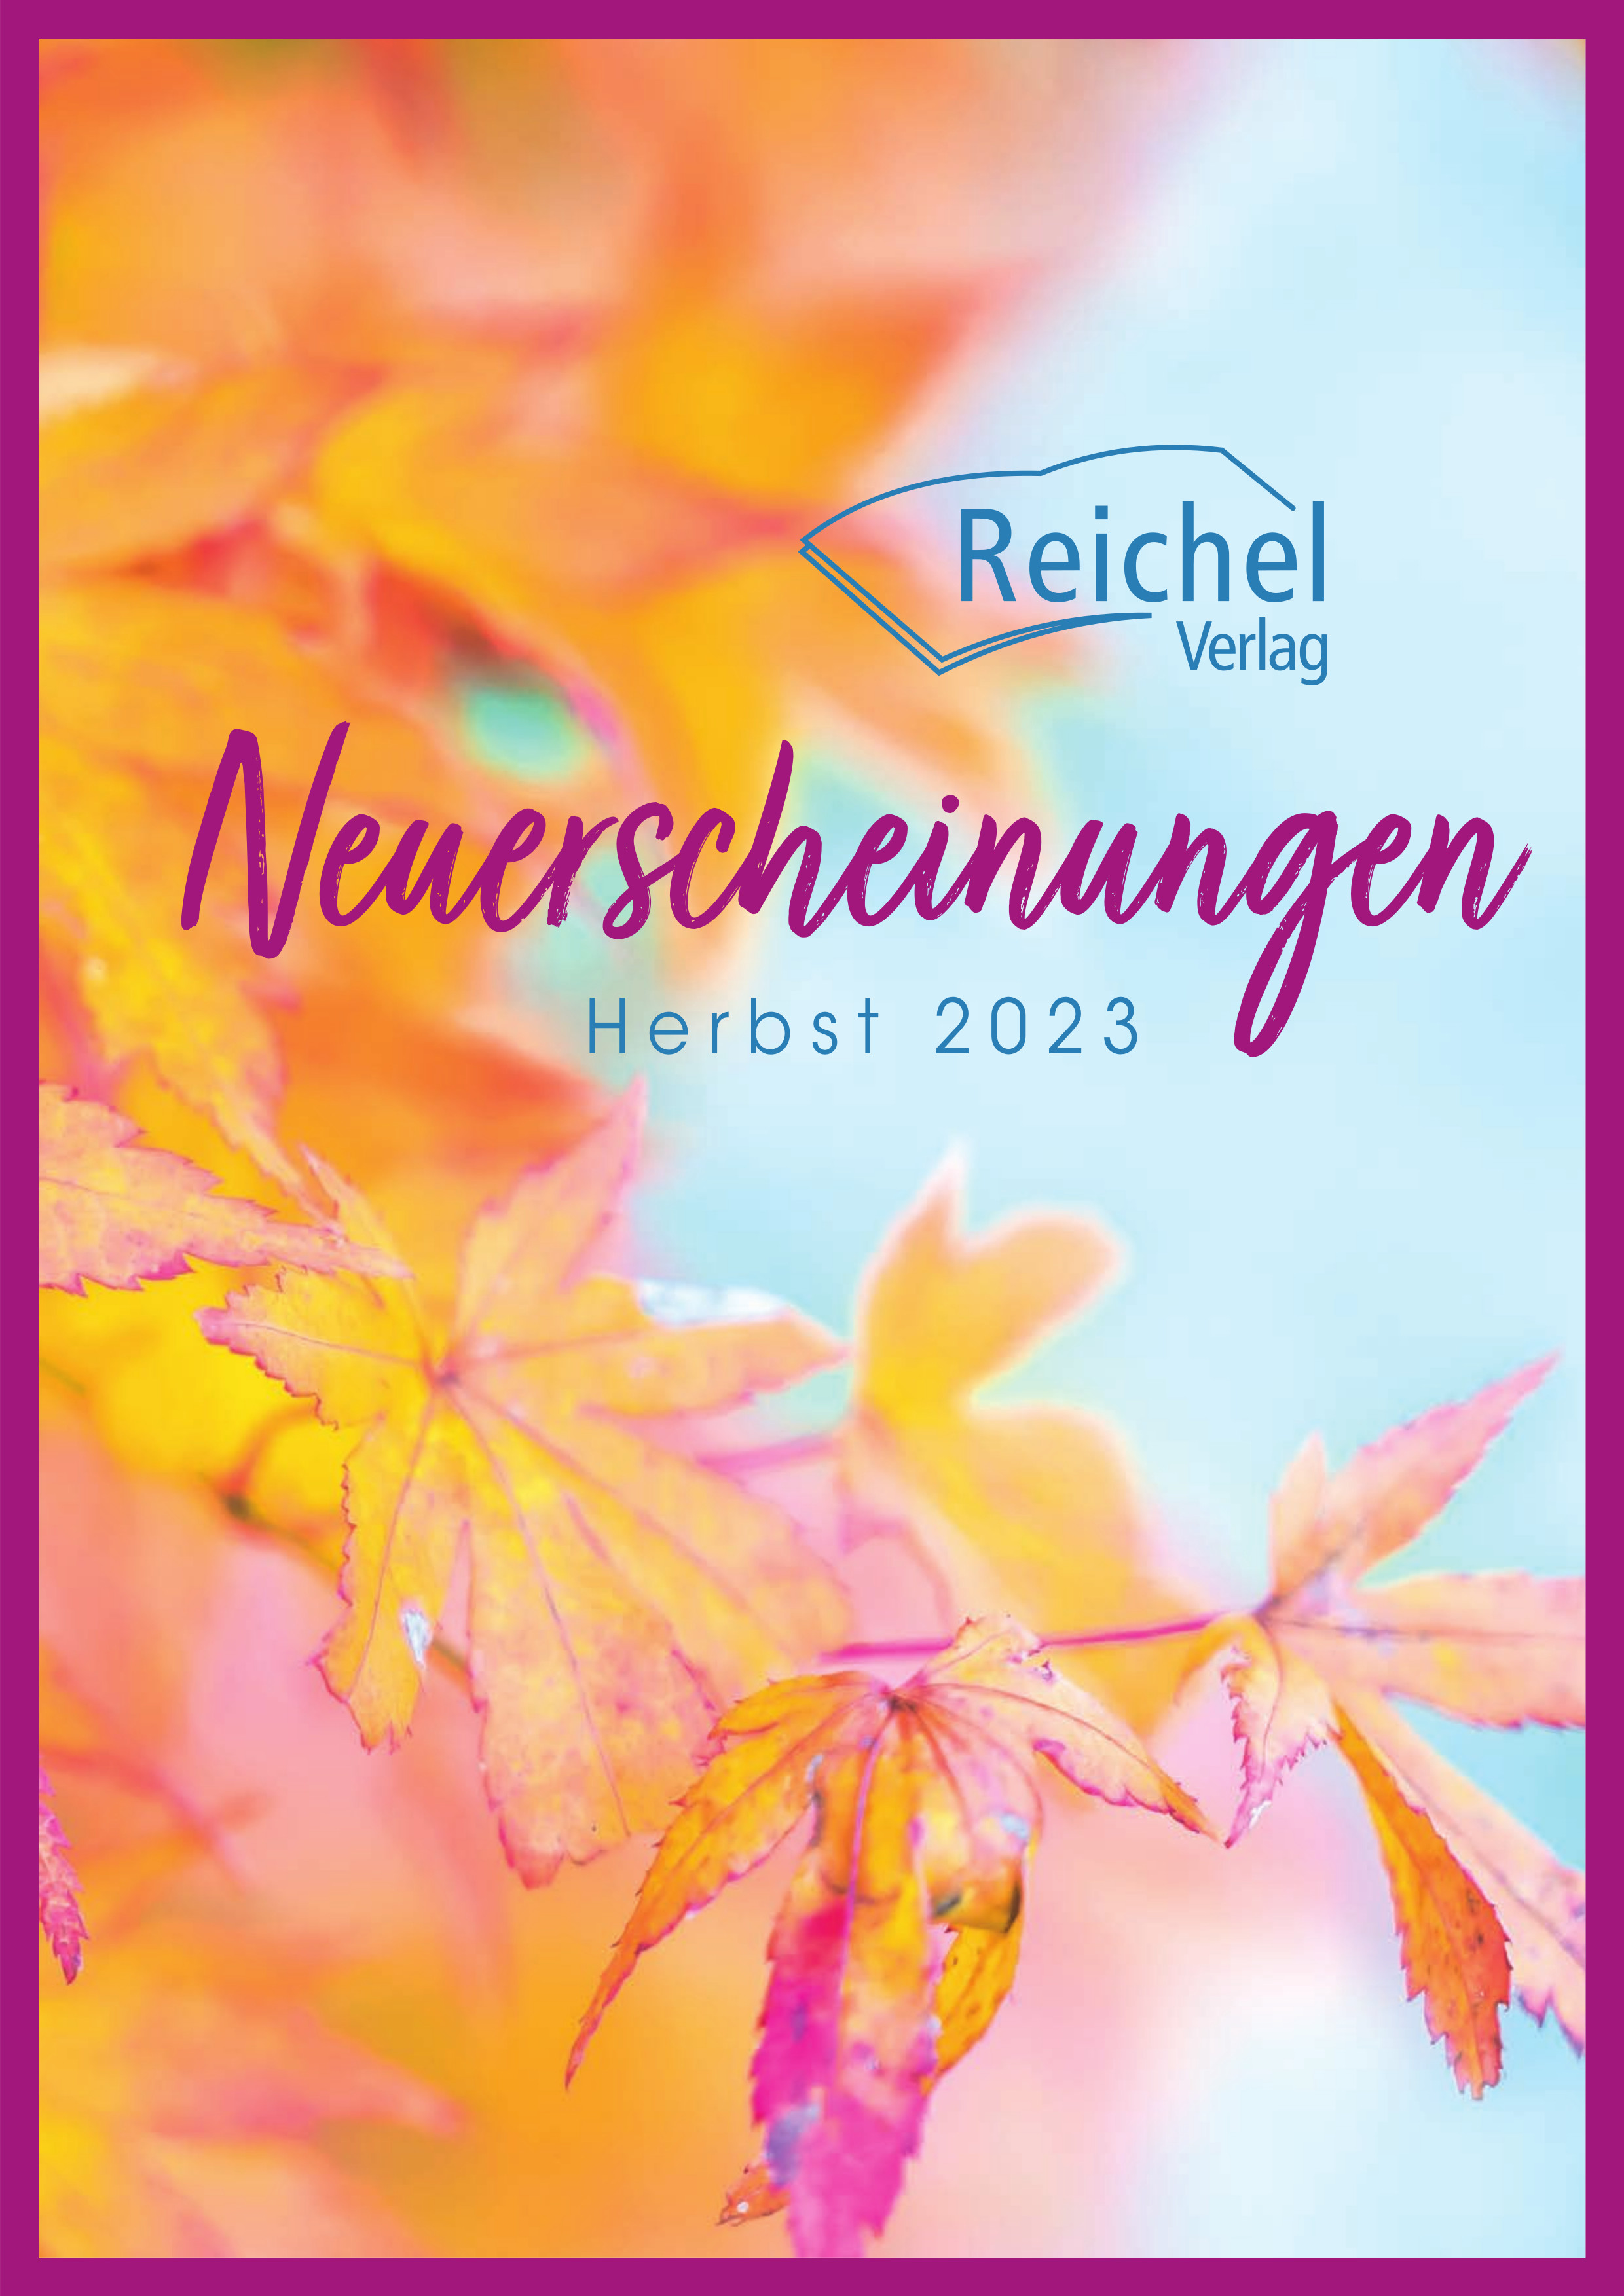 Vorschau des Reichel Verlags für Herbst 2023